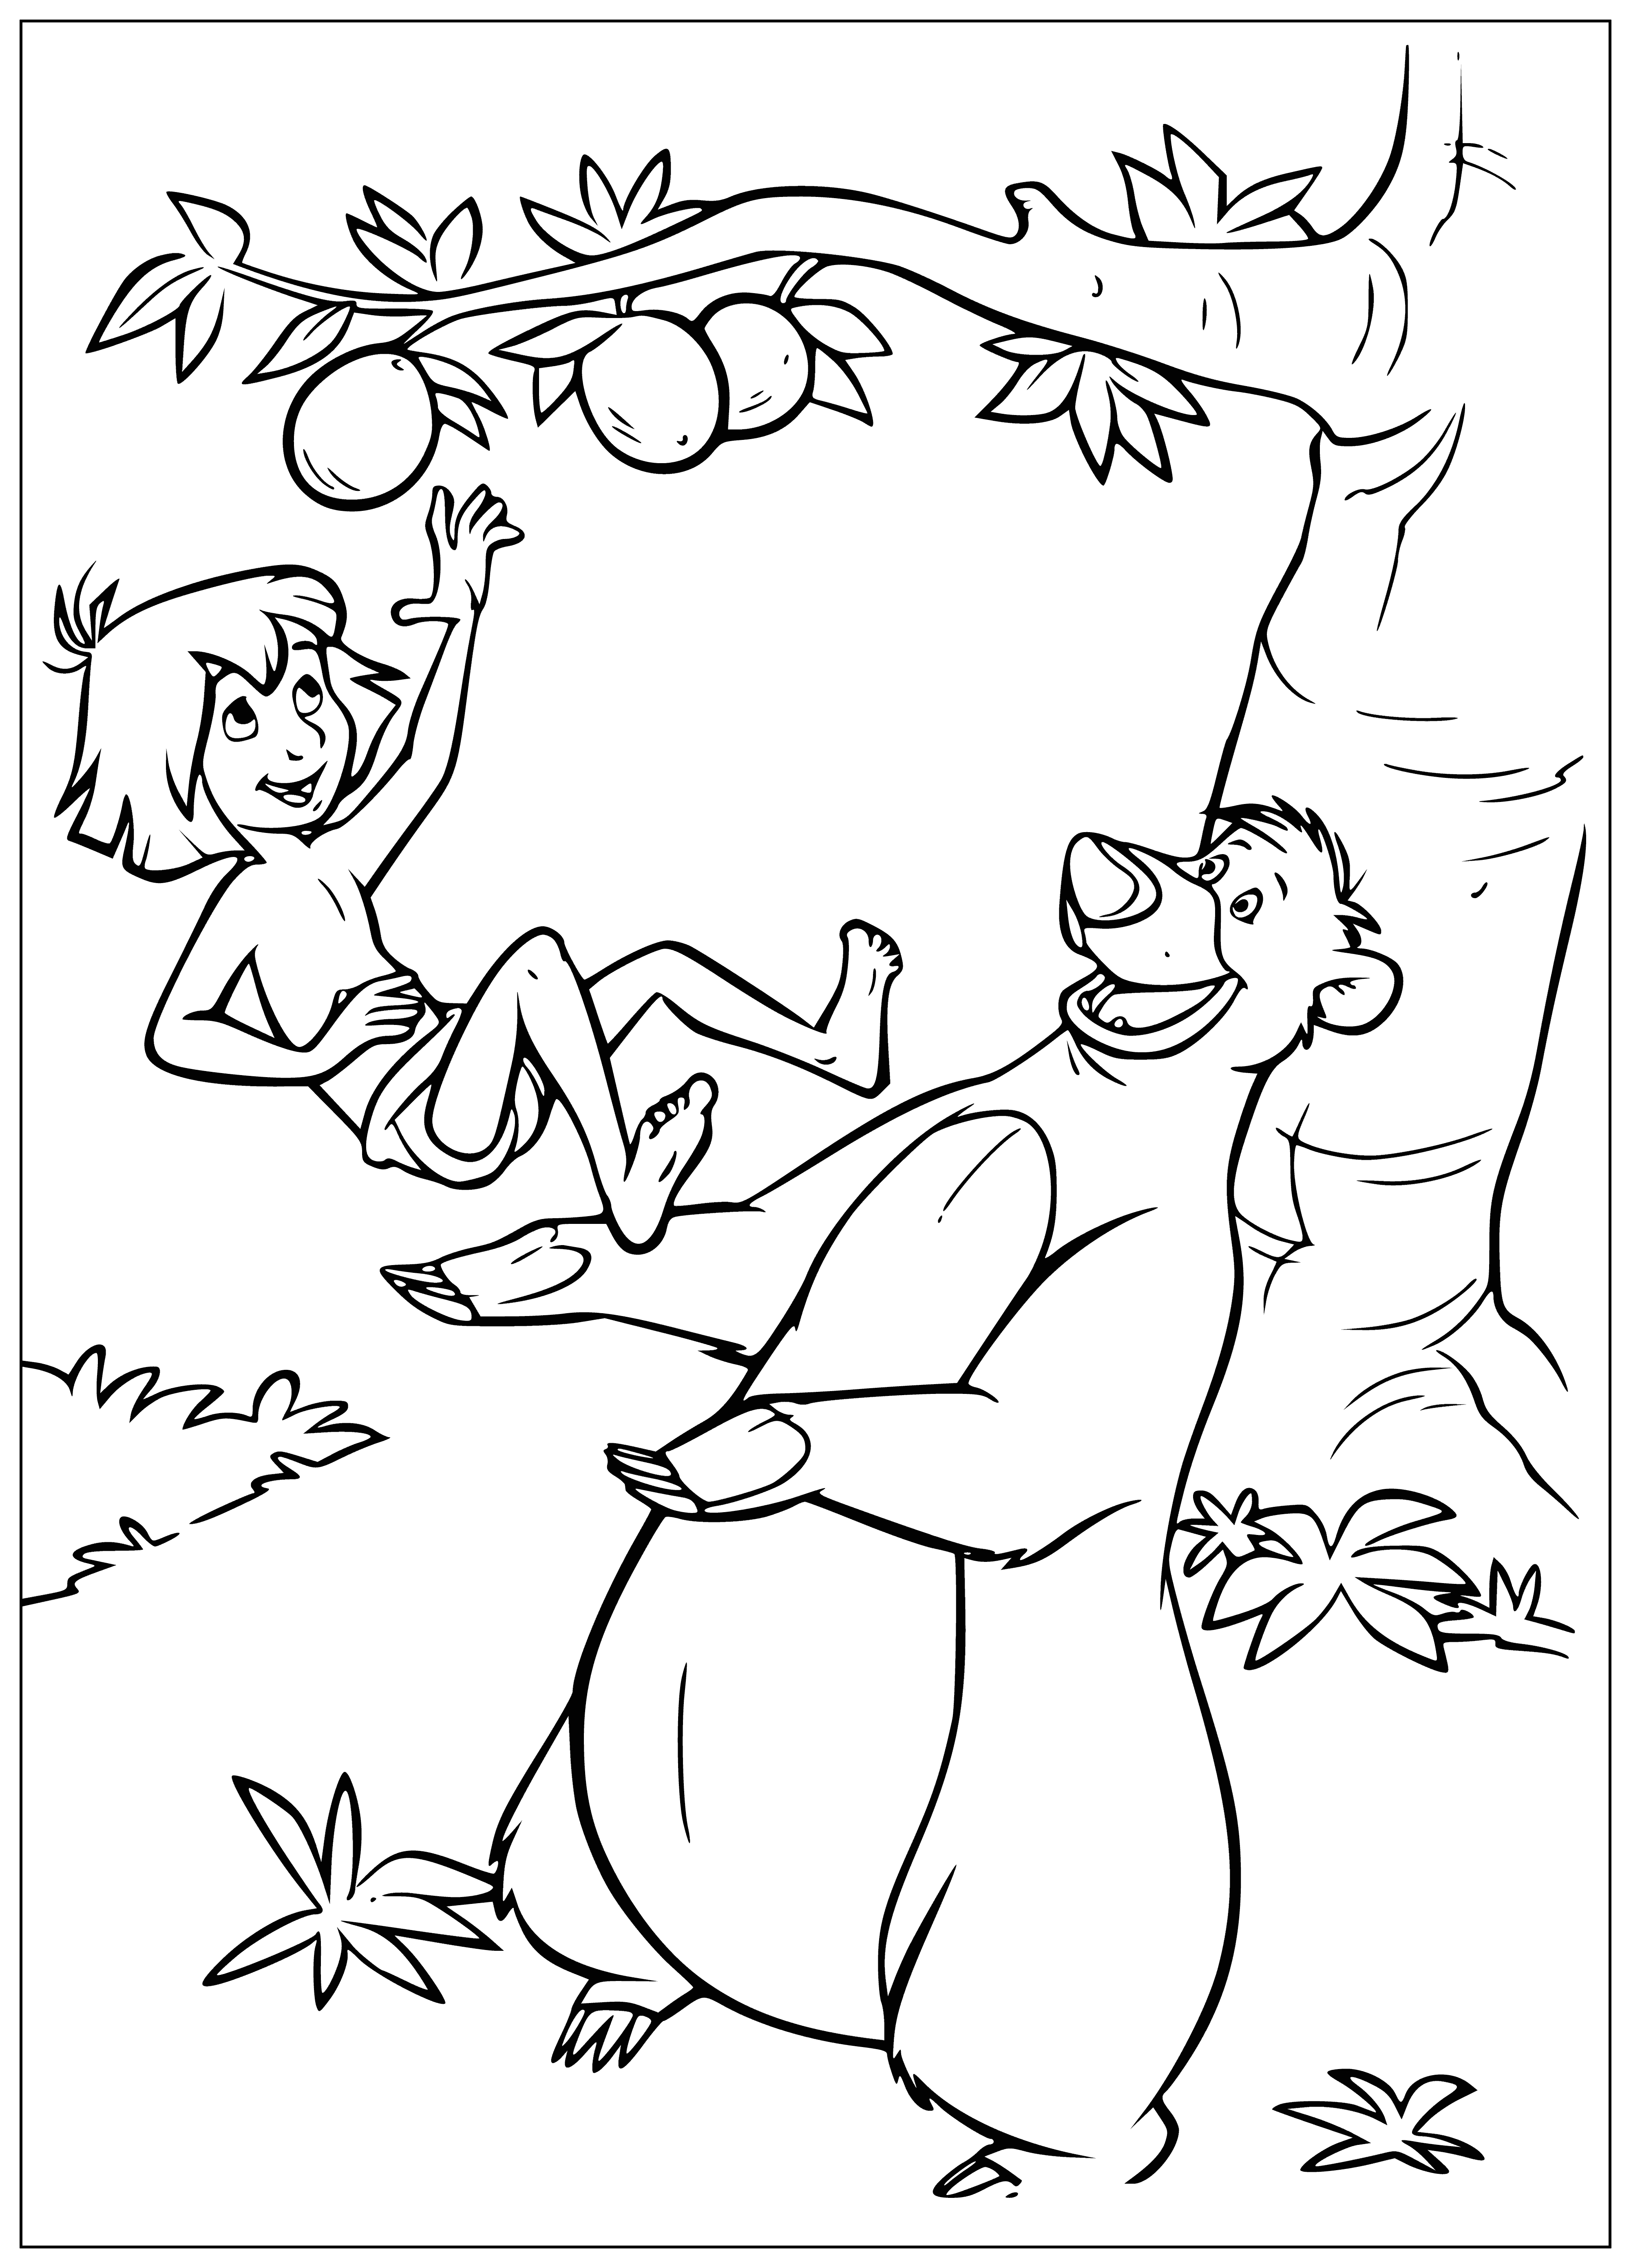 Baloo Bear coloring page